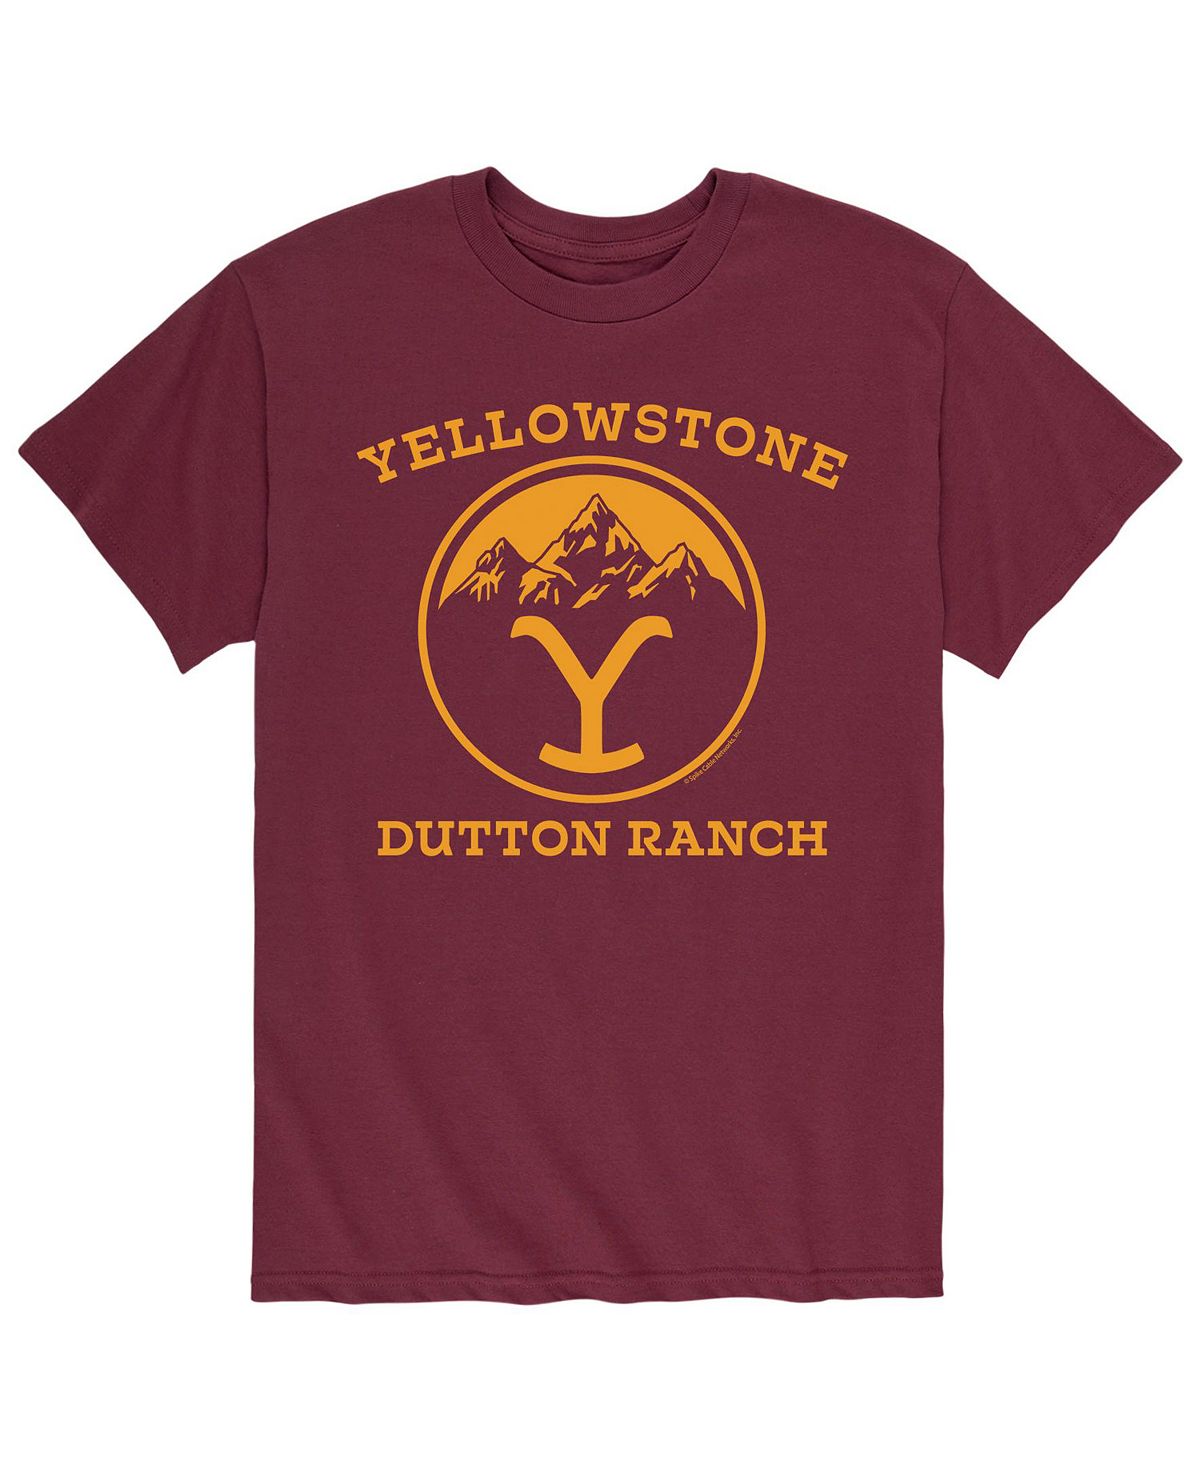 Мужская футболка yellowstone dutton ranch AIRWAVES, красный